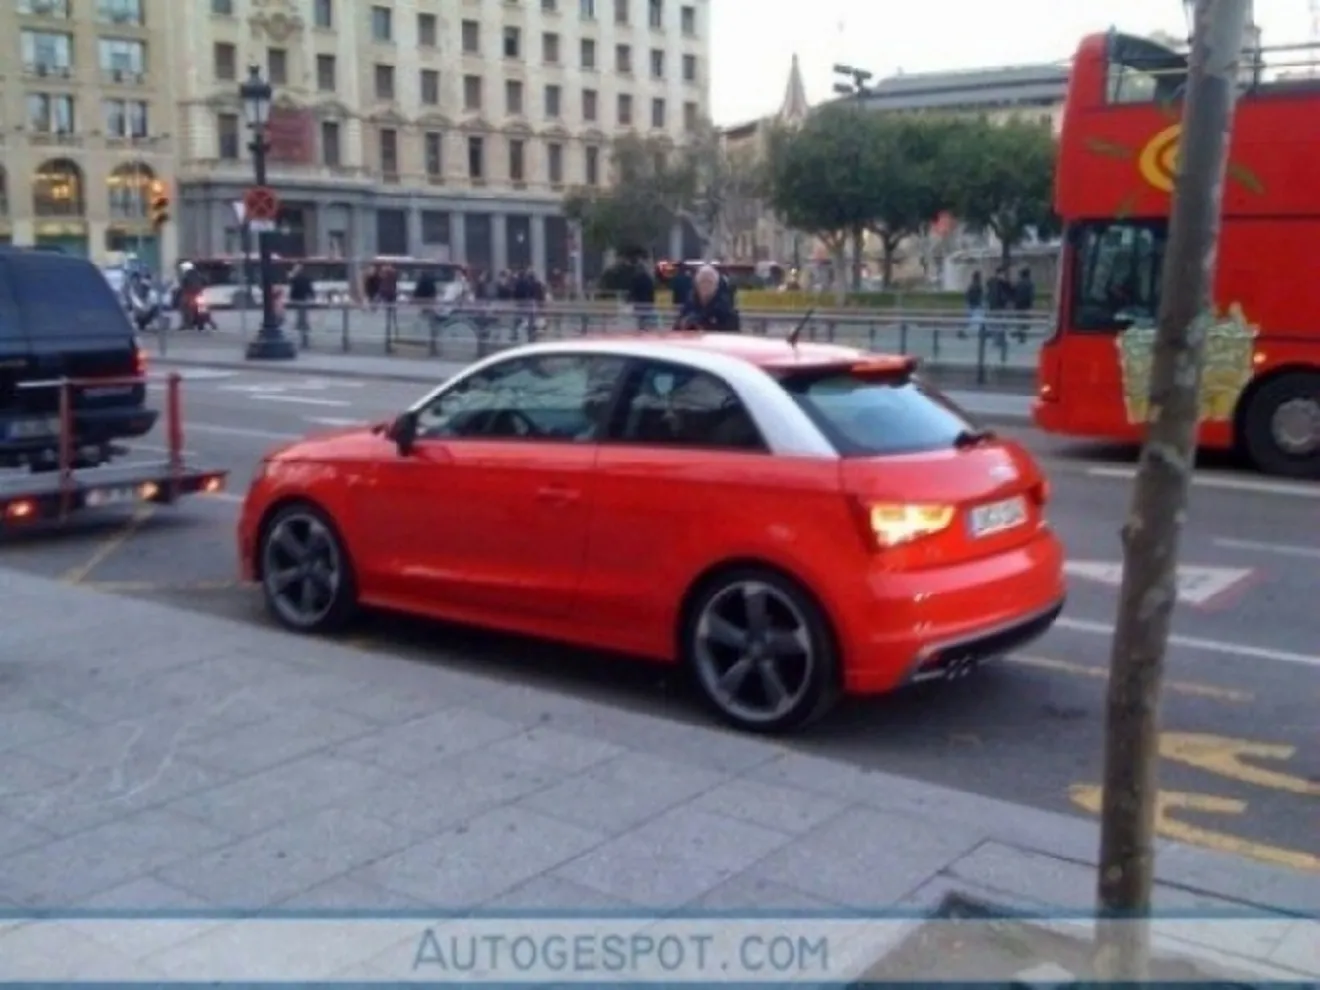 Audi A1 S rodando por las calles de Barcelona